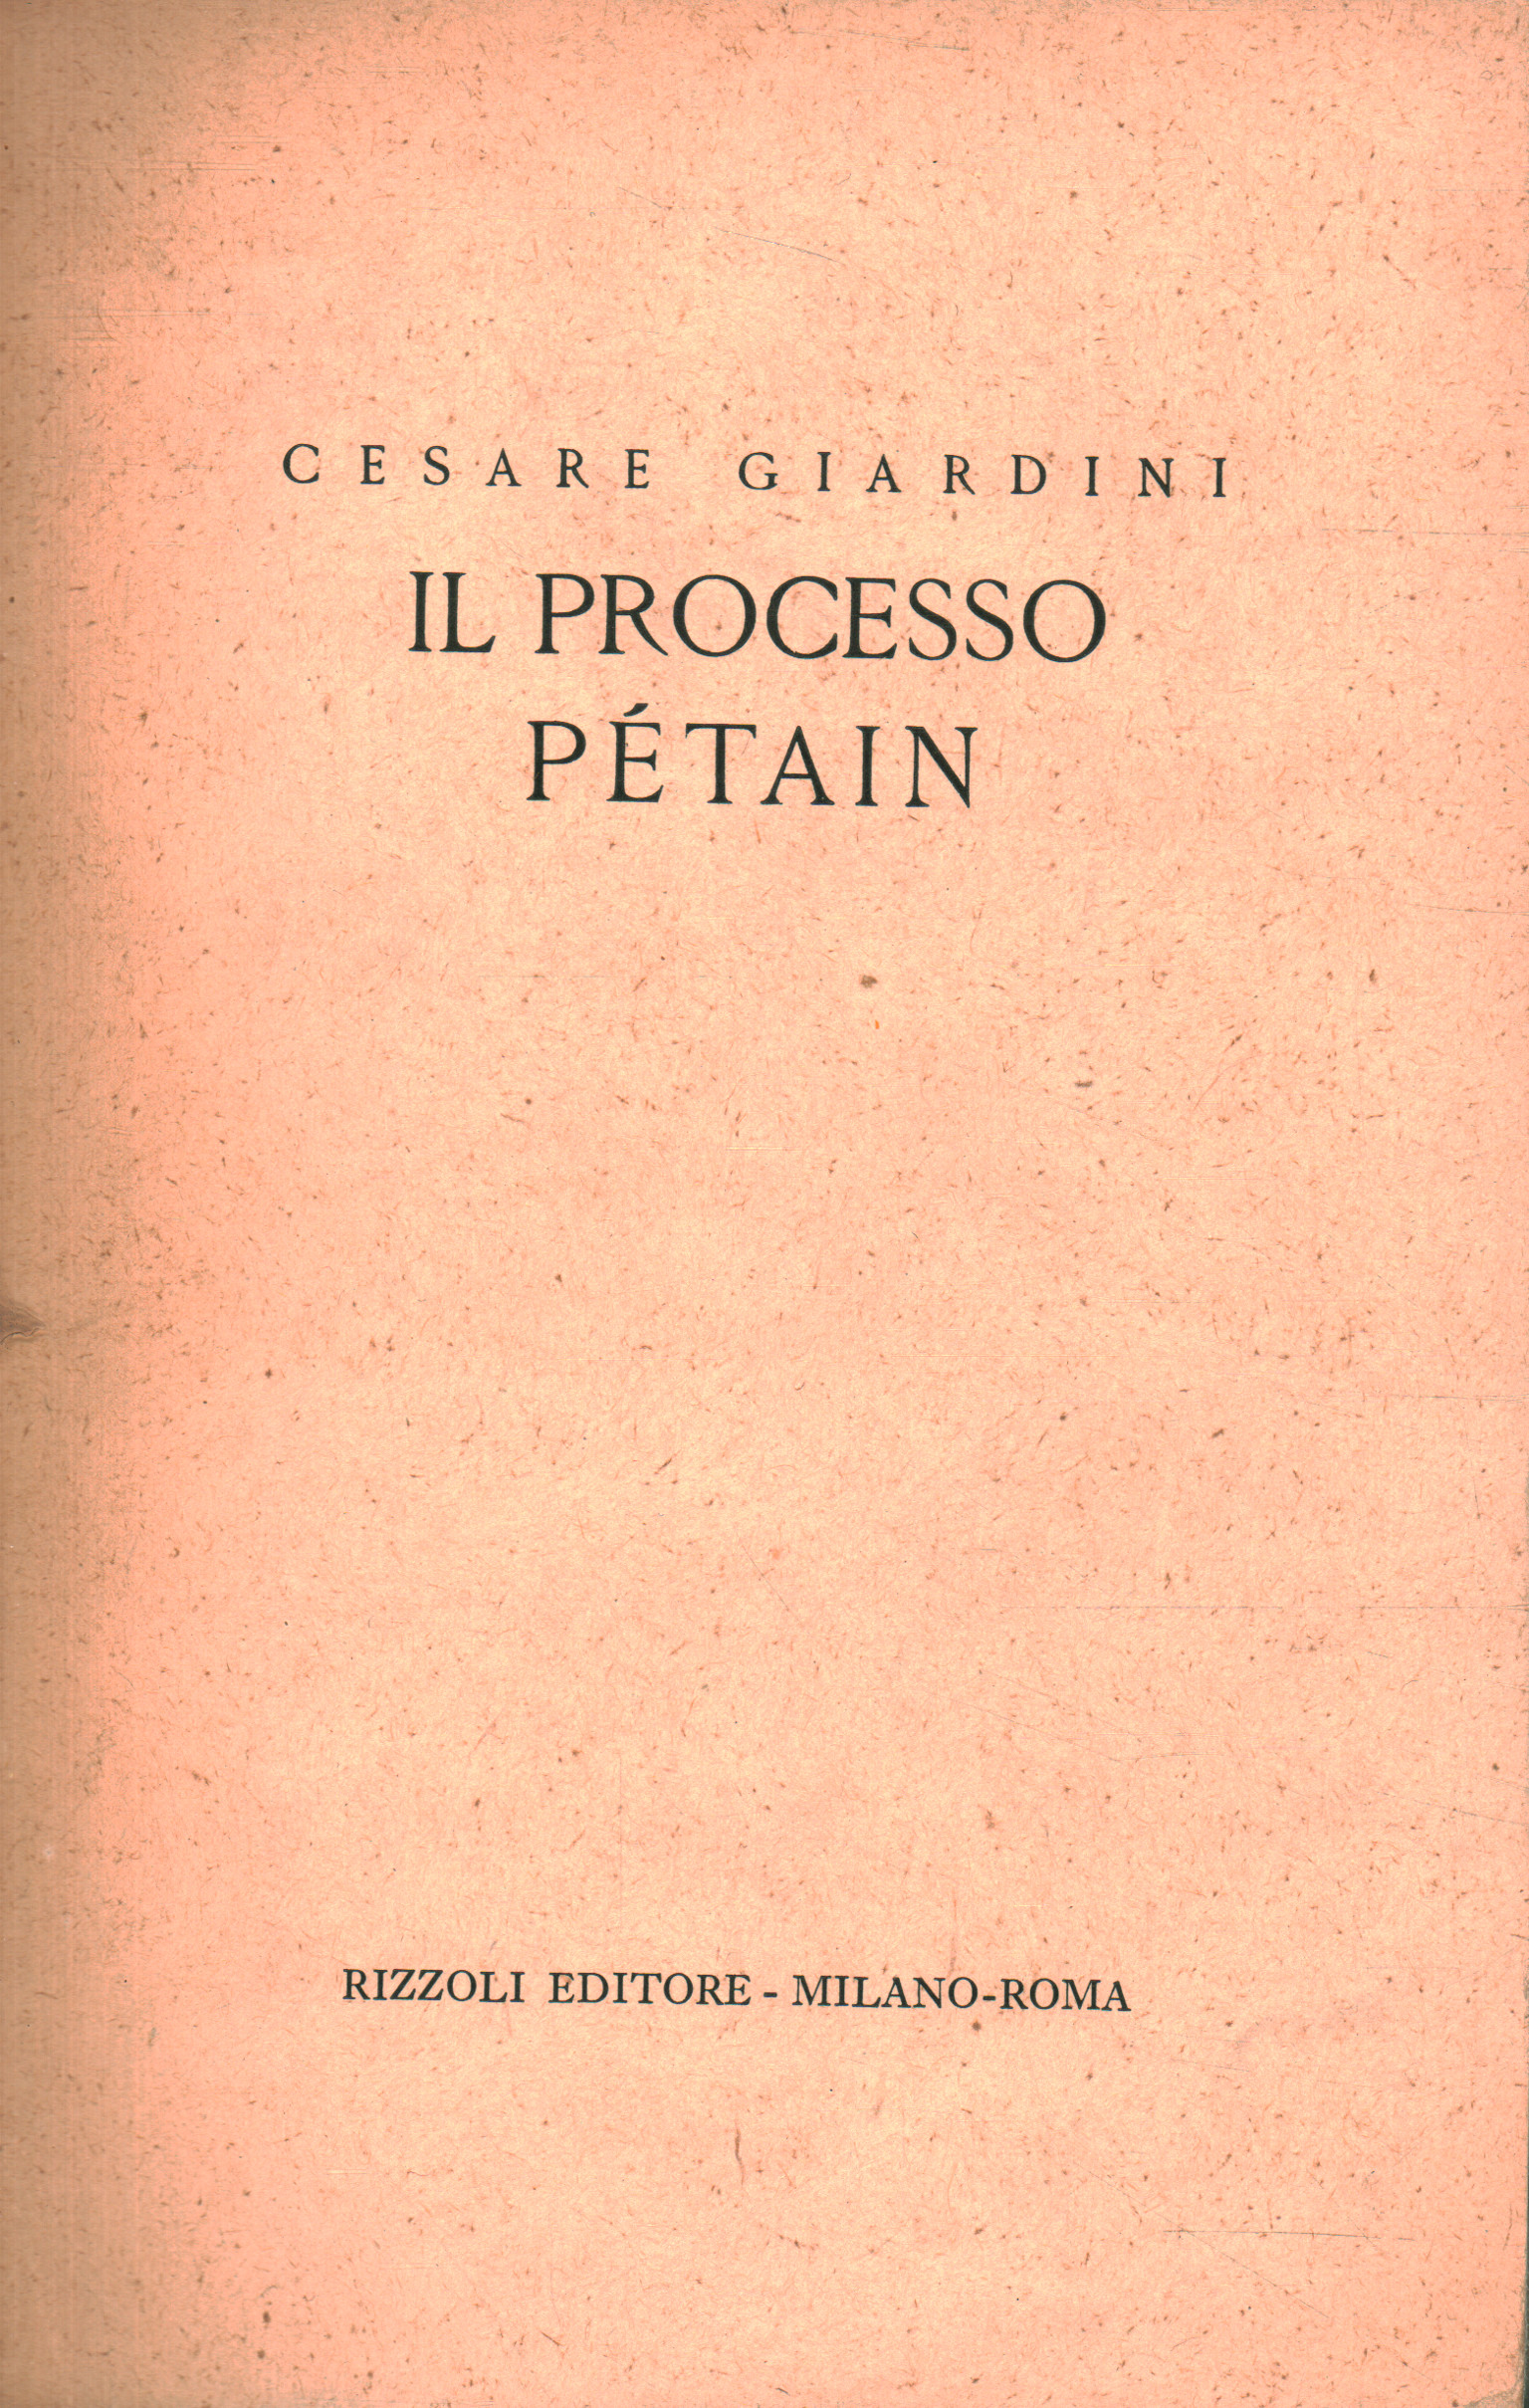 El juicio de Pétain